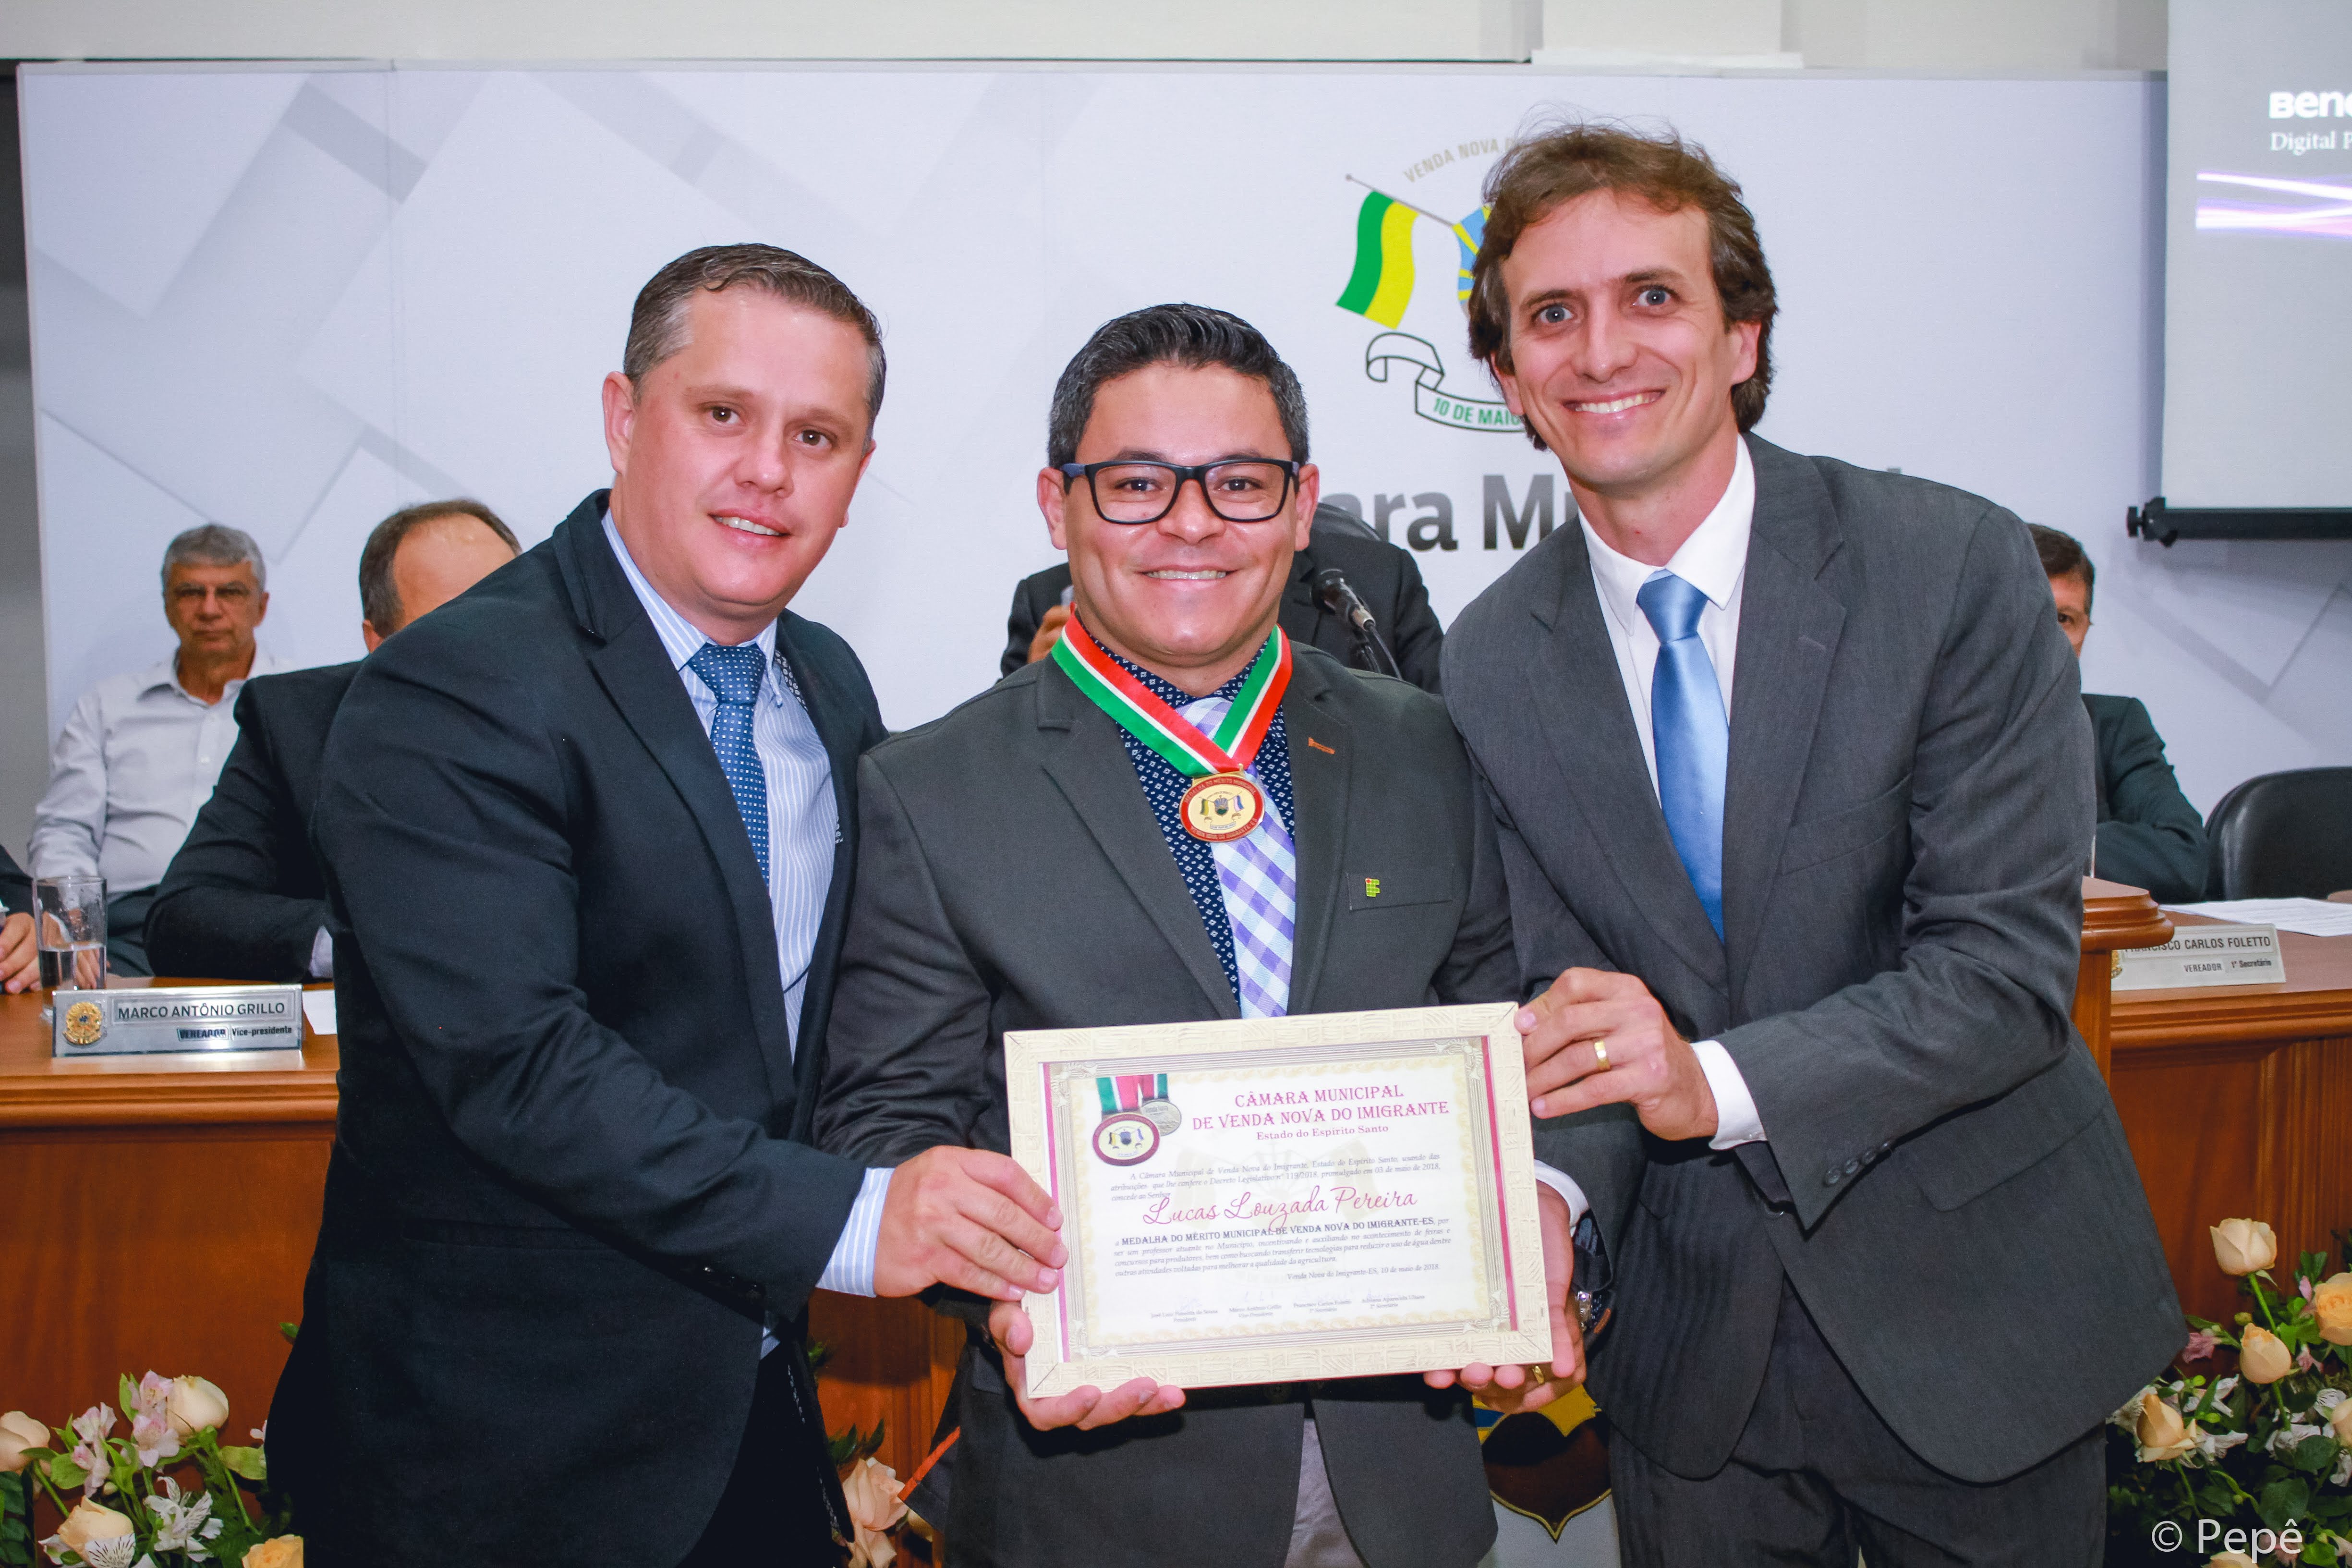 Lucas Louzada Pereira, professor do IFES, recebe homenagem “Medalha do Mérito Municipal de Venda Nova do Imigrante-ES”